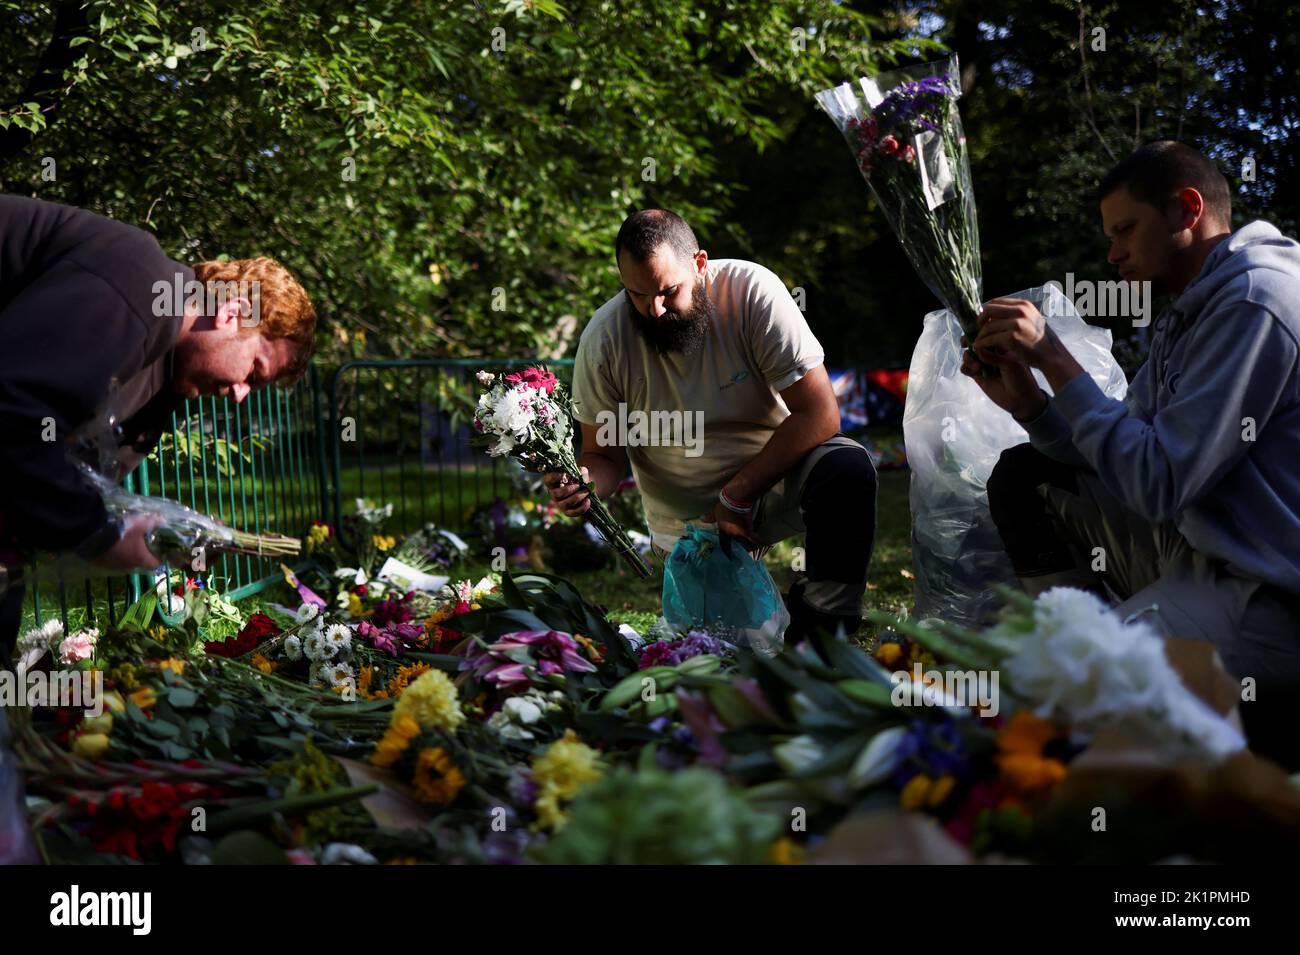 Freiwillige entfernen nach der Beerdigung der britischen Königin Elizabeth im Green Park in London, Großbritannien, am 20. September 2022 Verpackungen von Blumengebeten. REUTERS/Tom Nicholson Stockfoto